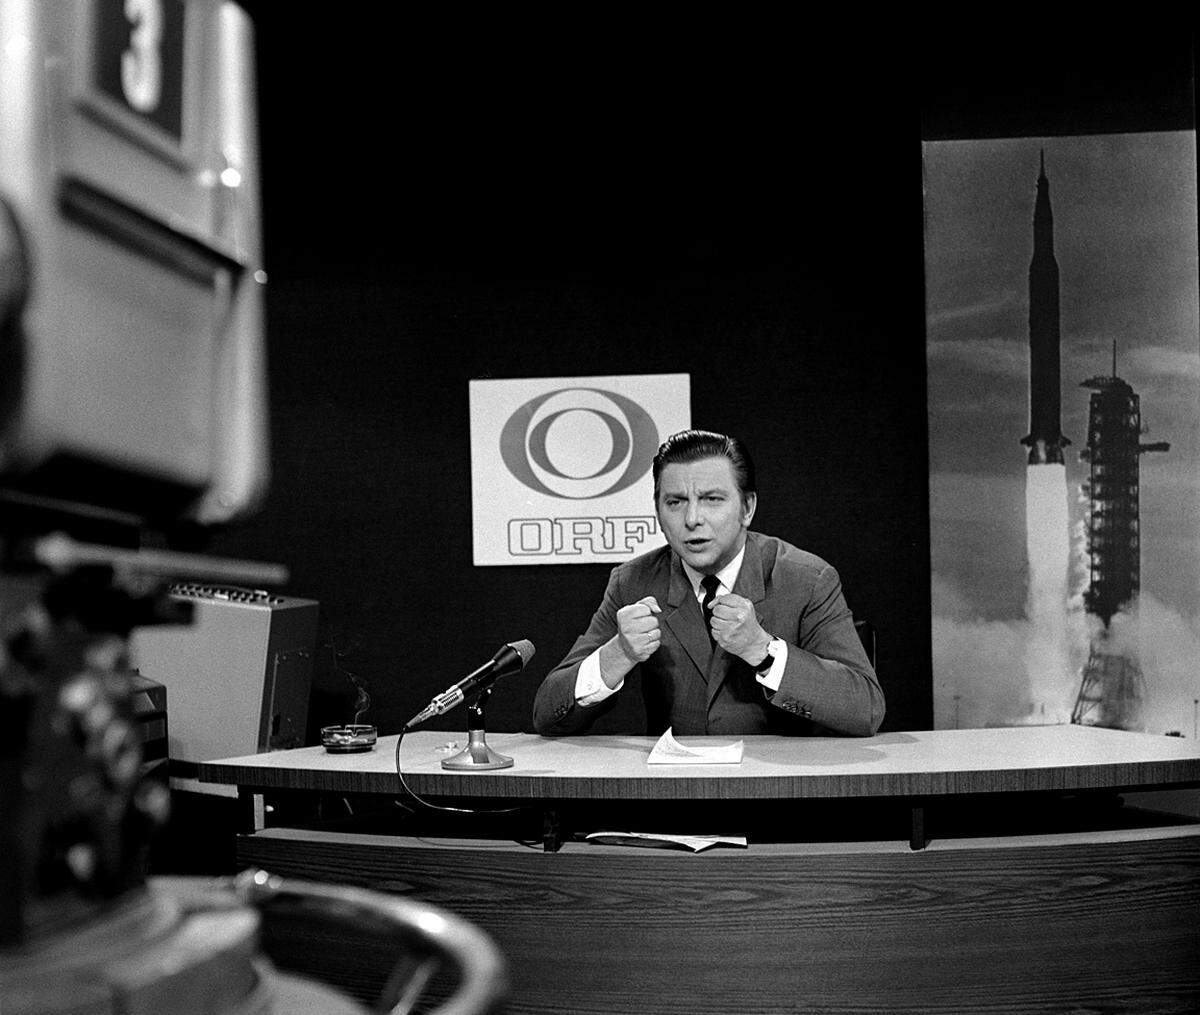 Mit einem neuen Rundfunkgesetz wurde ab 1967 der ORF de facto neu gegründet und das Programmangebot nach und nach ausgebaut. 1968 erreichte man bereits eine Millionen Fernsehteilnehmer.Im Bild: "Apollo 11" im ORF: Hugo Portisch bei der TV-Liveübertragung der Mondlandung am 20. Juli 1969